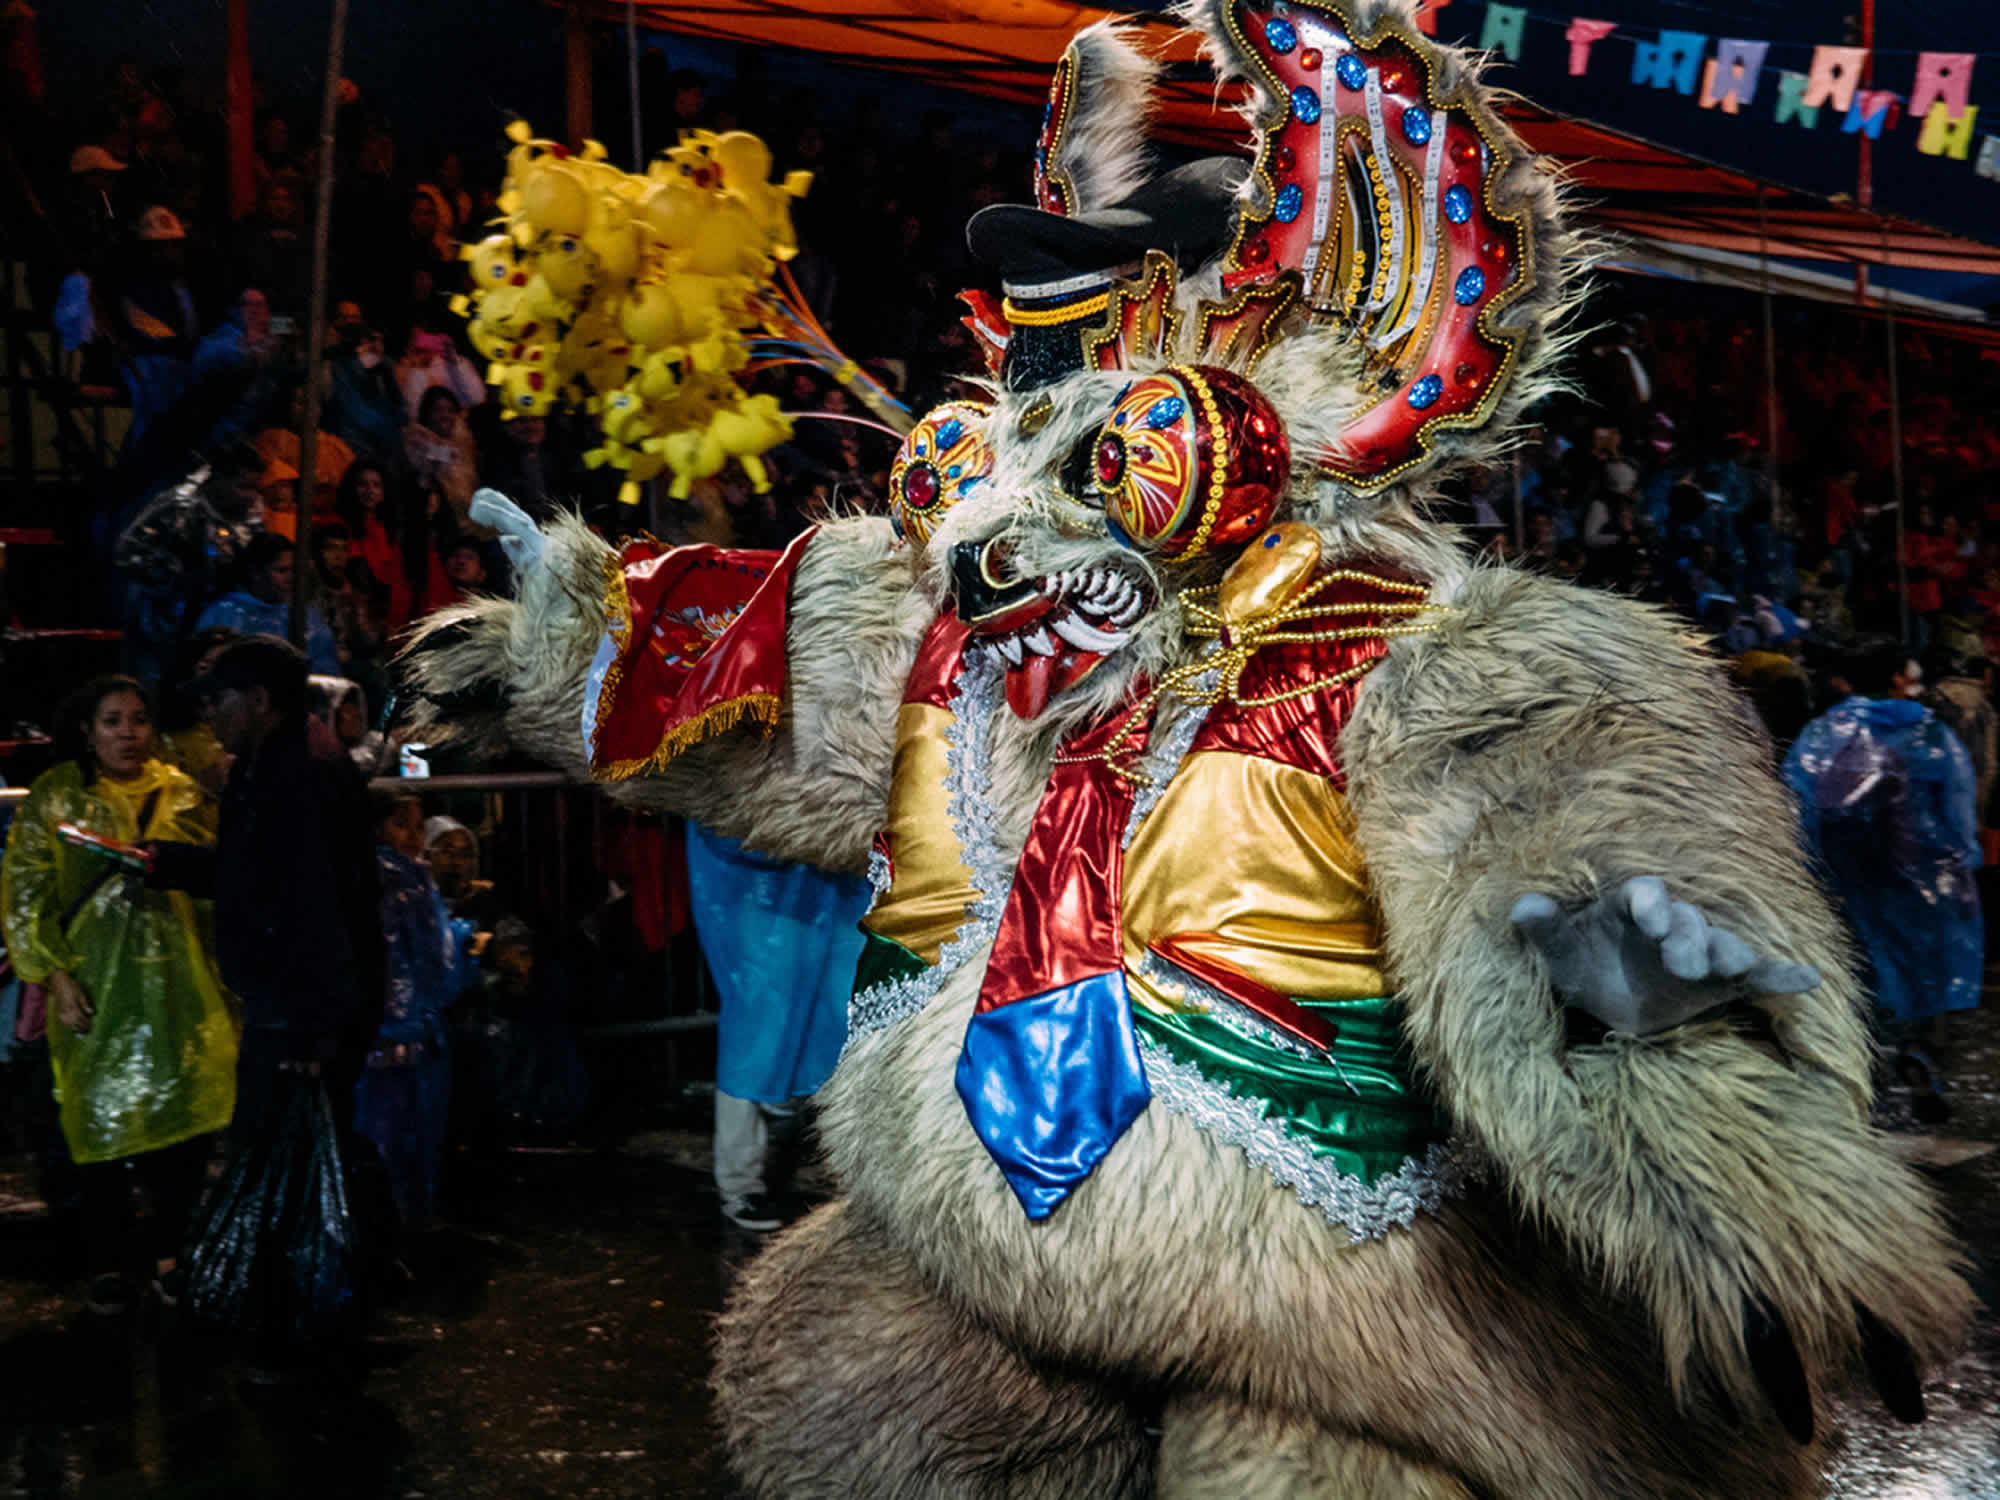 La Paz - Oruro Carnival Parade 2020 – La Paz, Oruro Carnival, Oruro